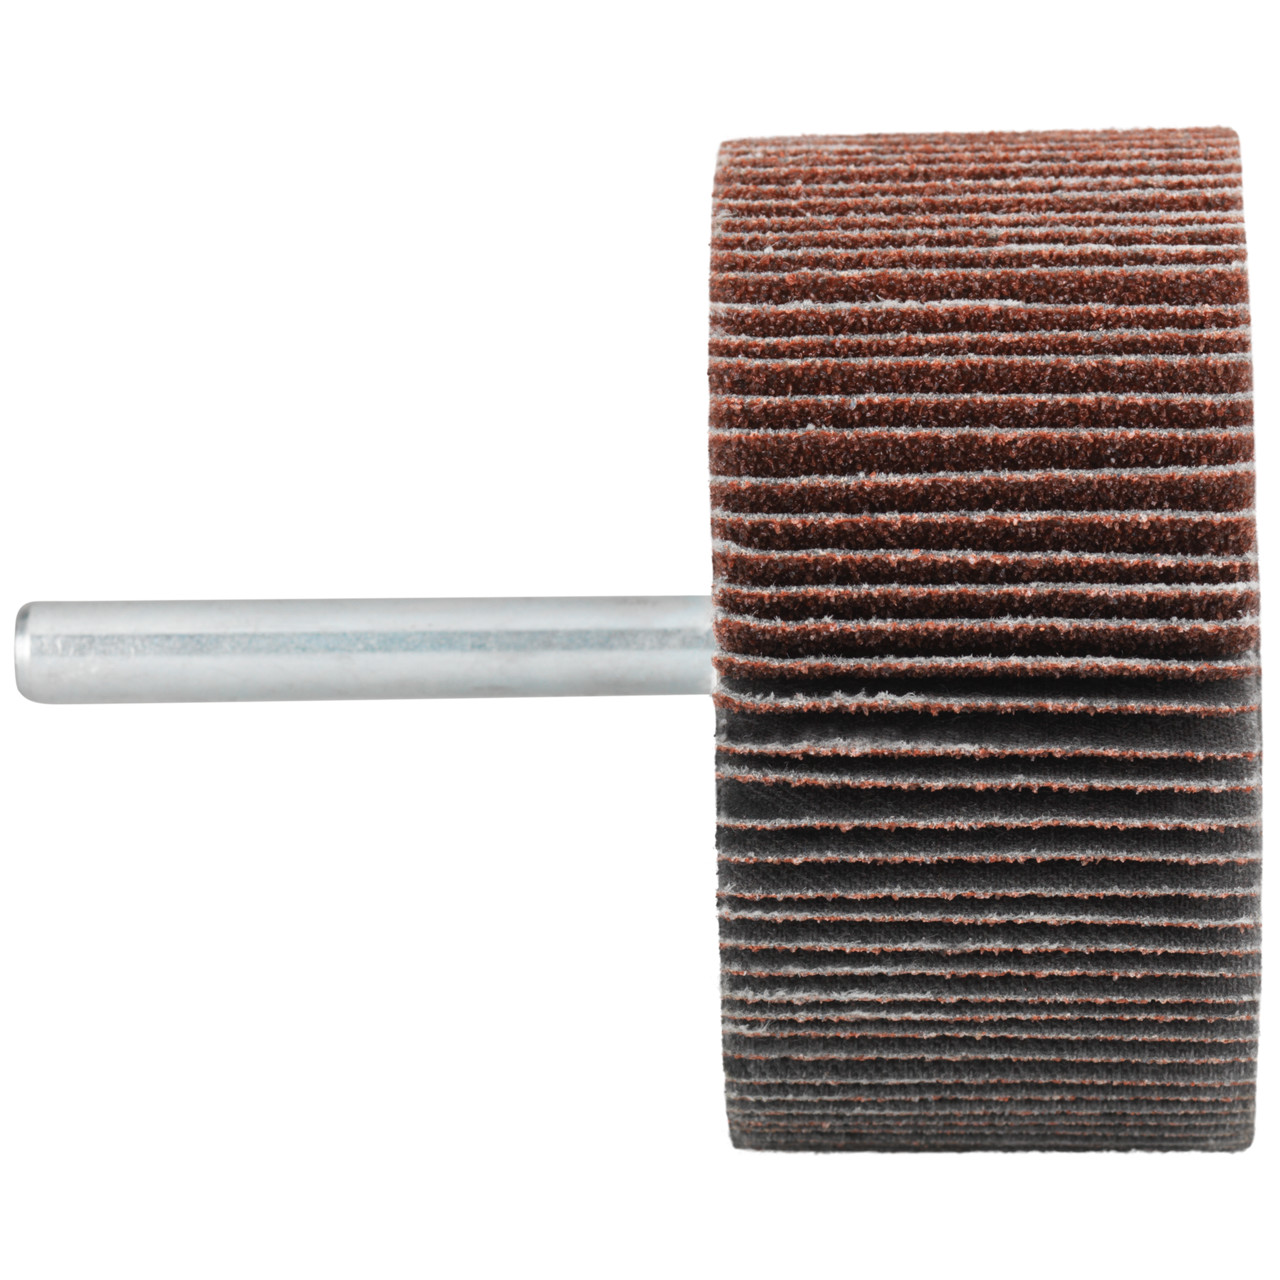 Tyrolit A-P01 C X Pennen DxD 60x30 Voor staal, roestvast staal en non-ferrometalen, P60, vorm: 52LA, Art. 816959